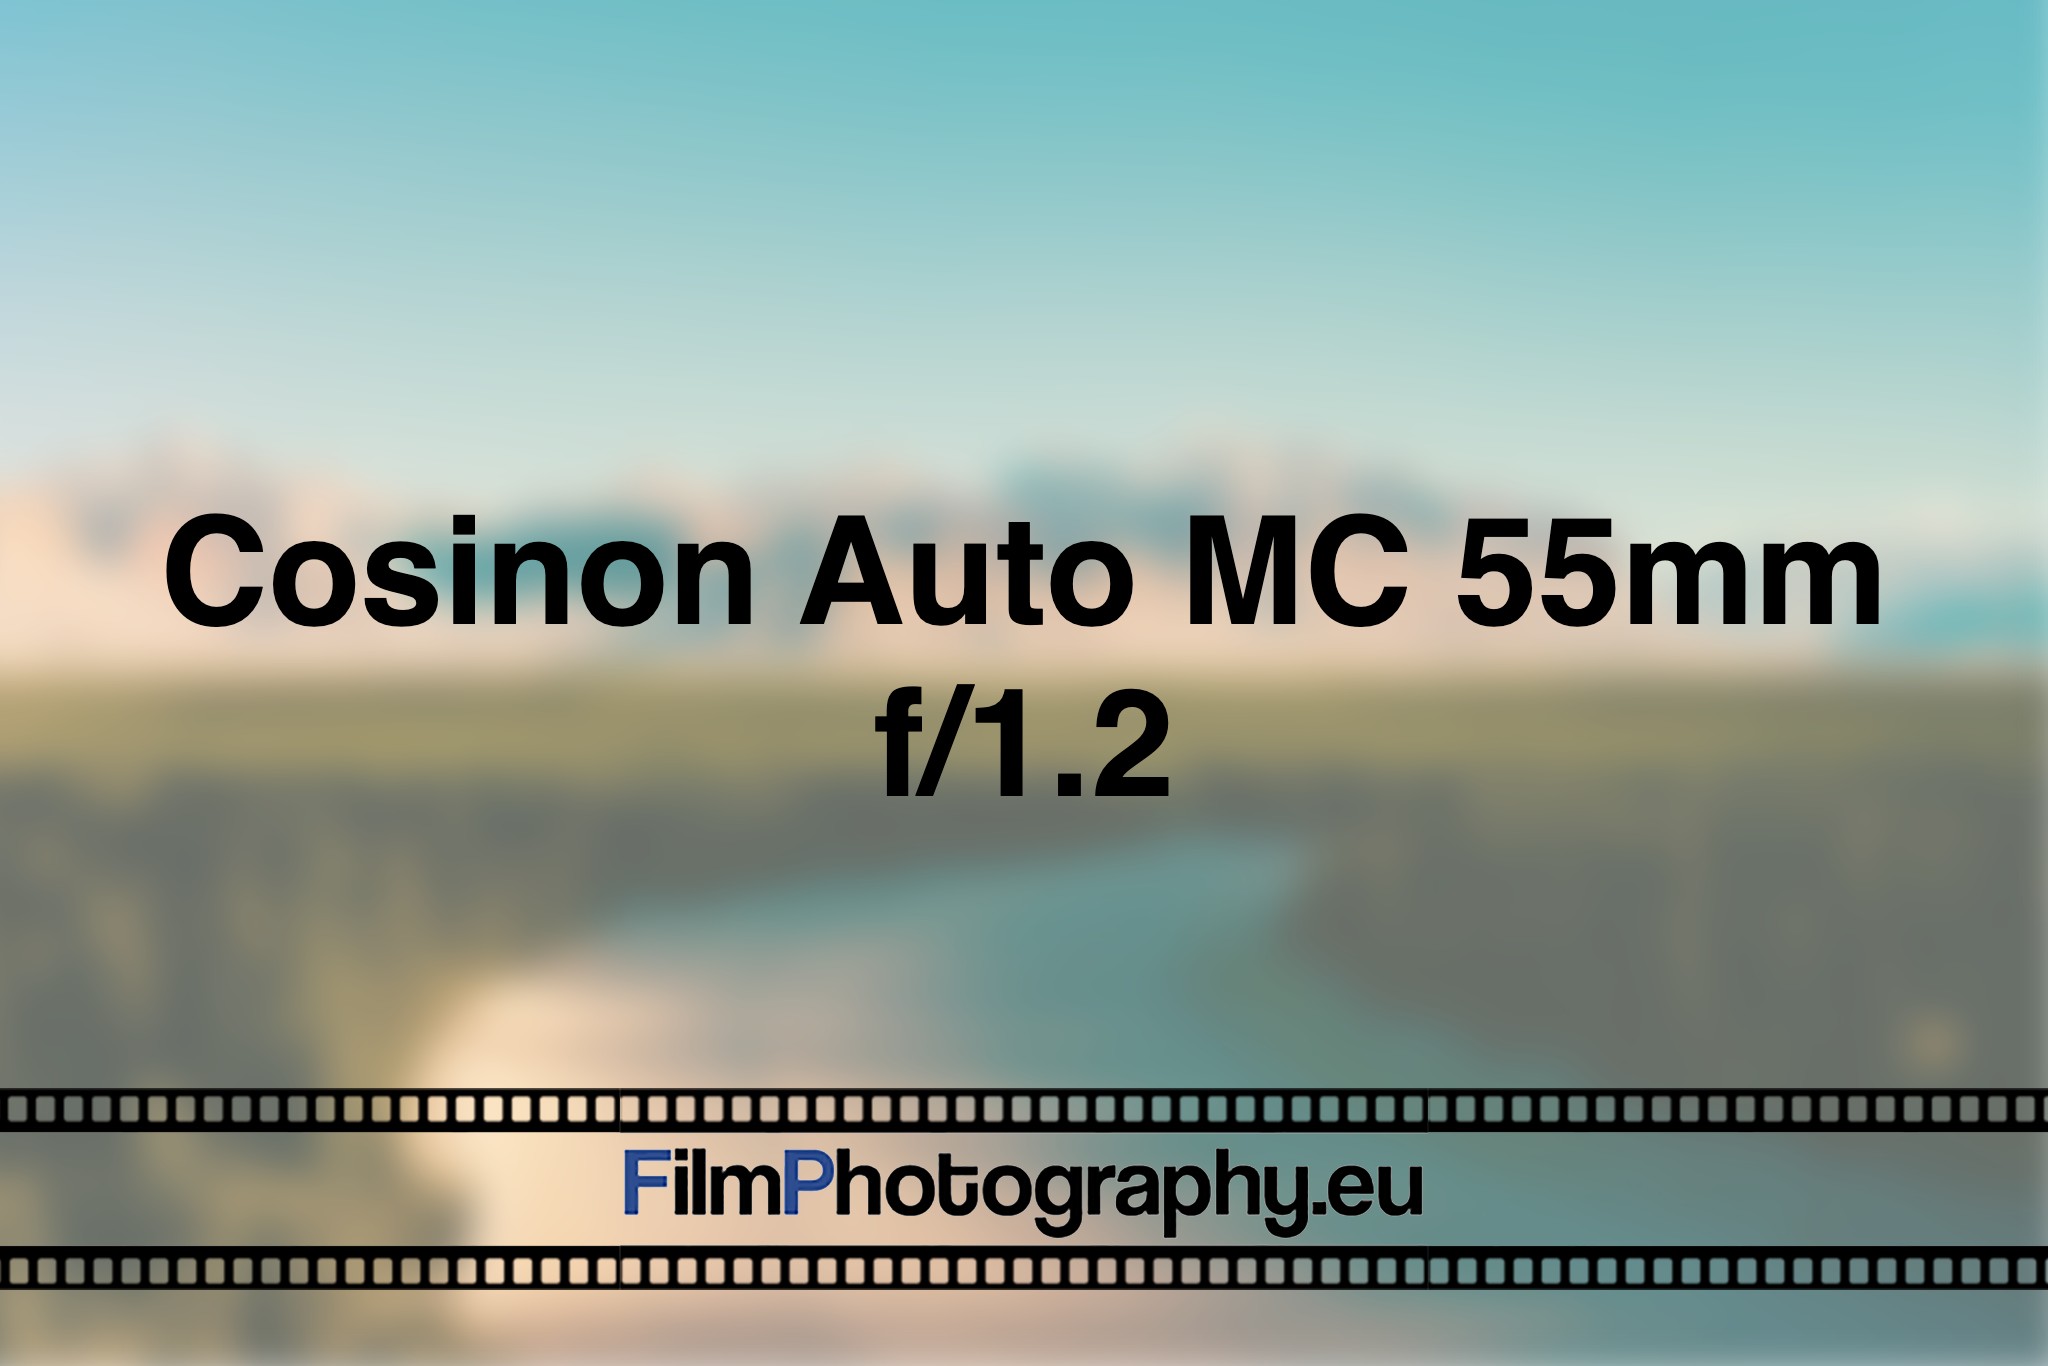 cosinon-auto-mc-55mm-f-1-2-photo-bnv